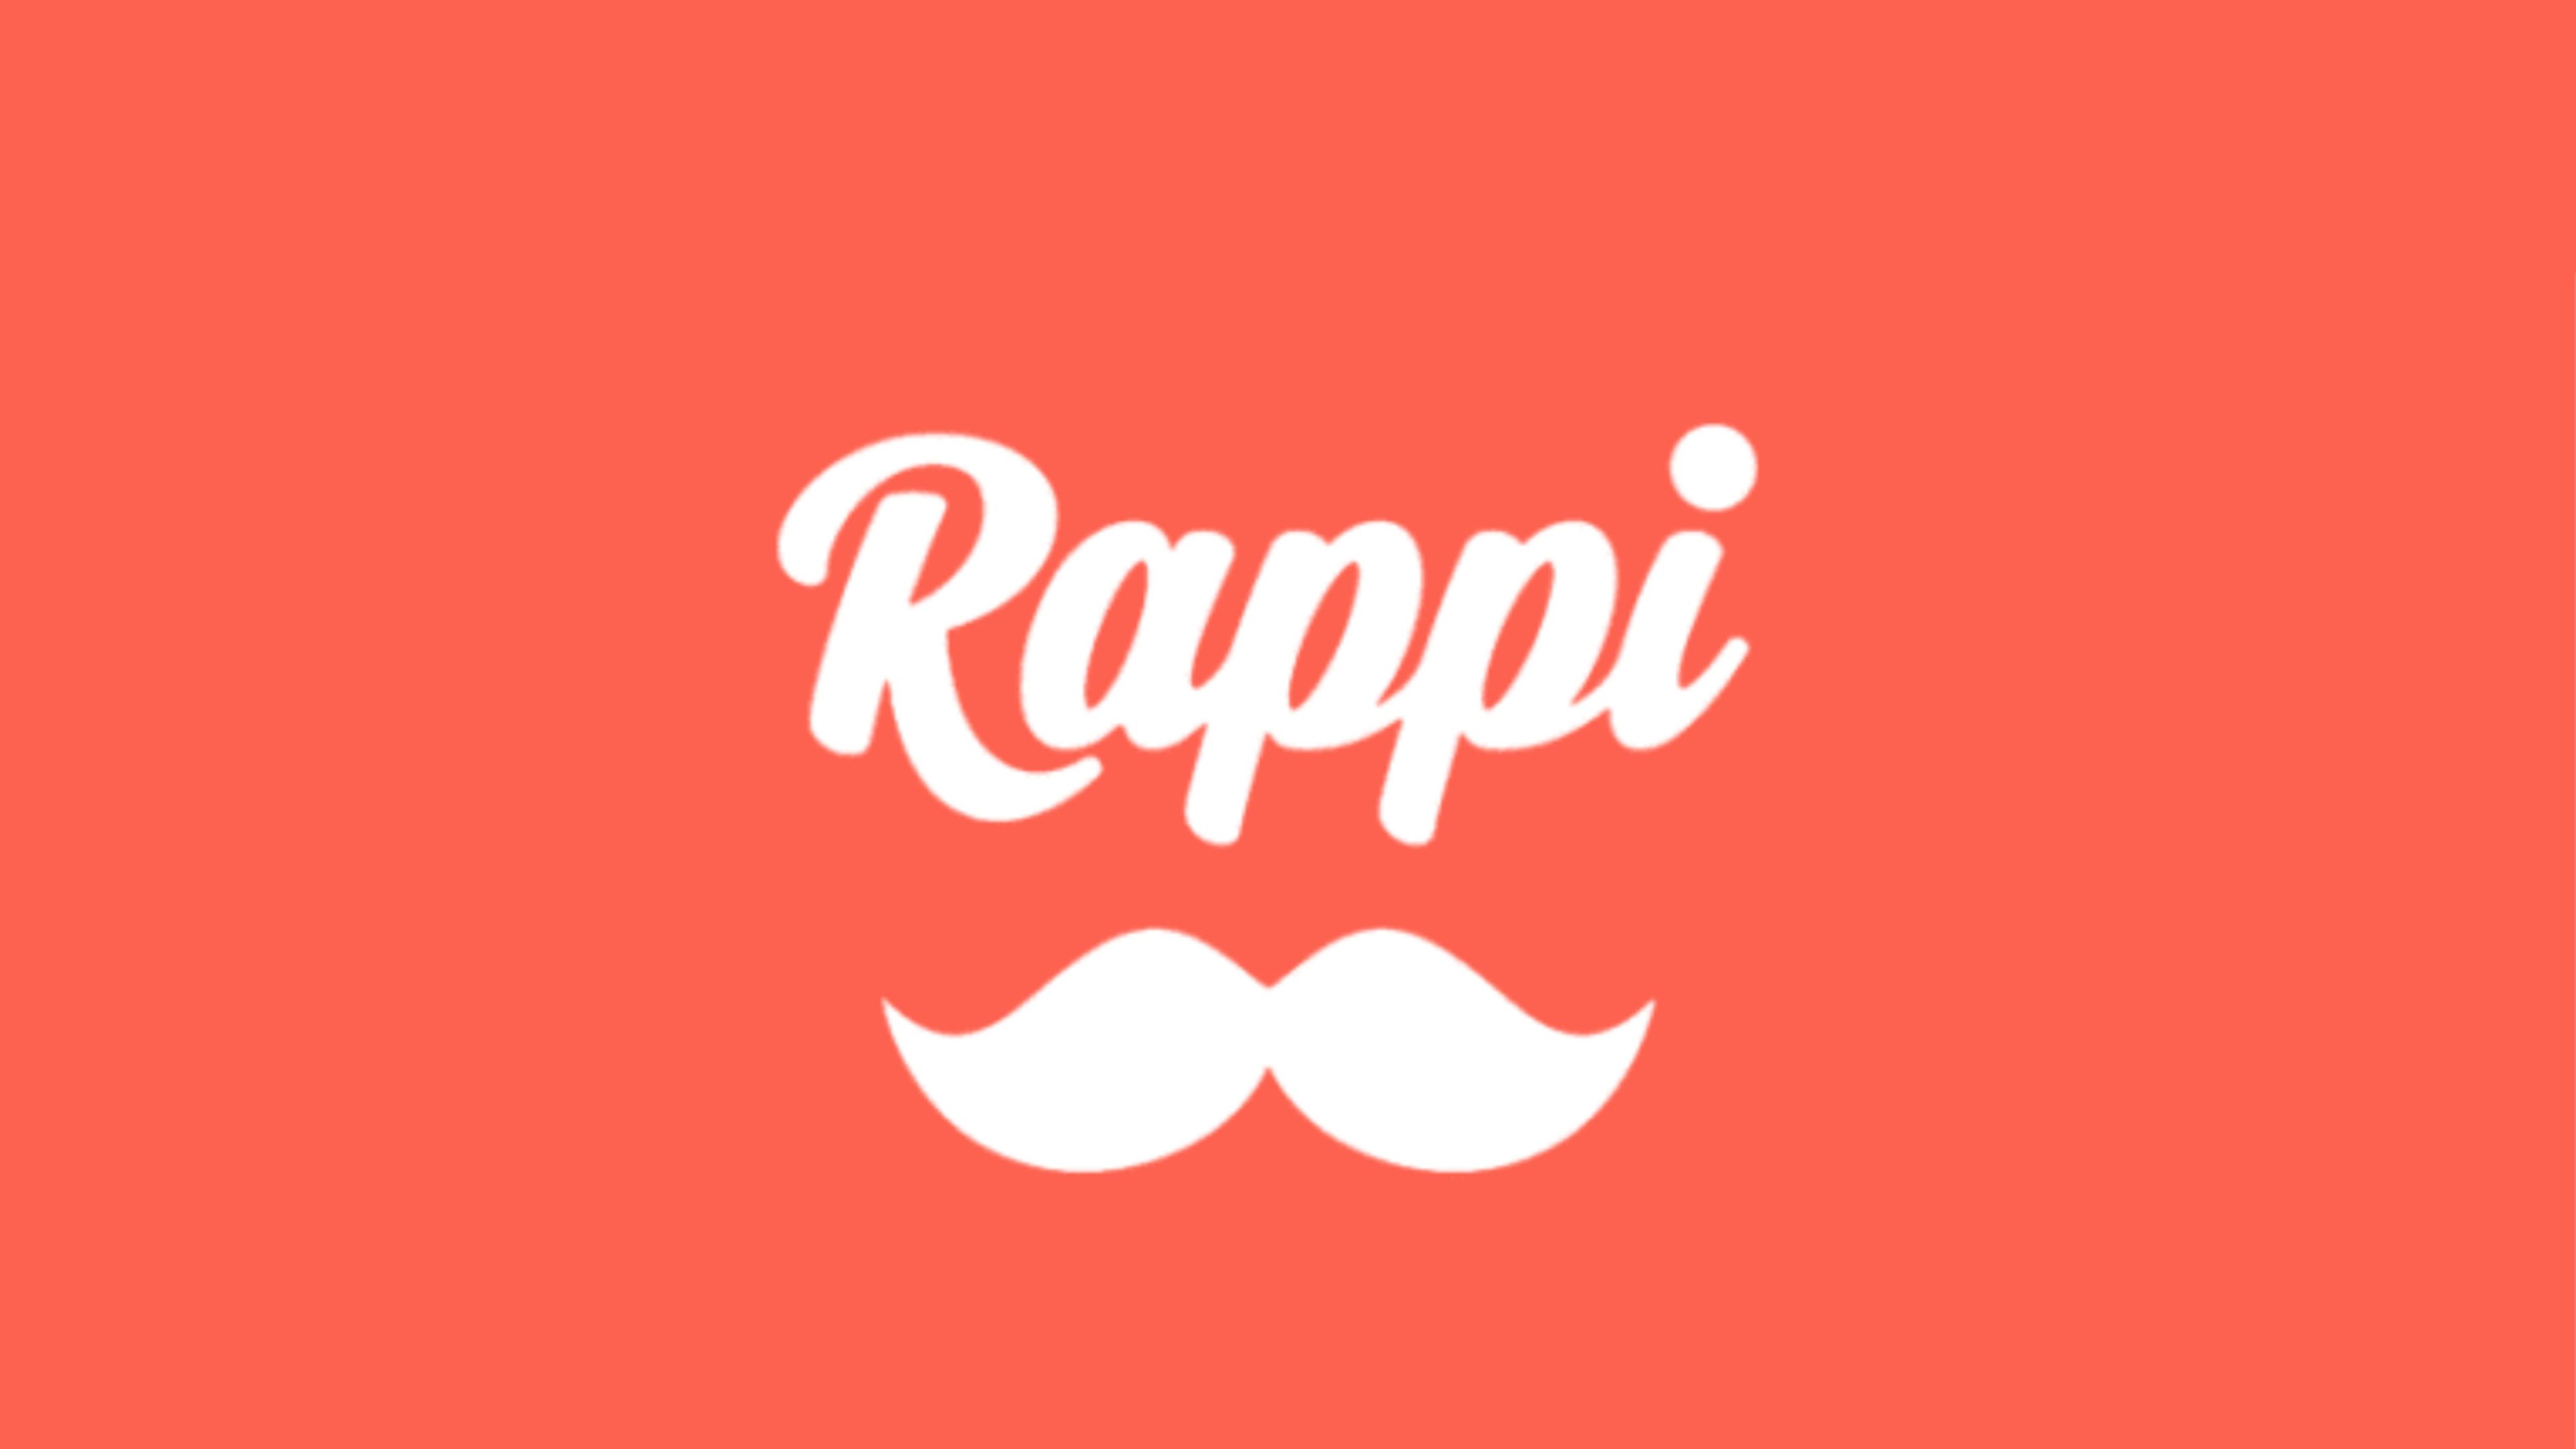 O Sou Rappi complementam alguns benefícios já oferecidos pela plataforma.